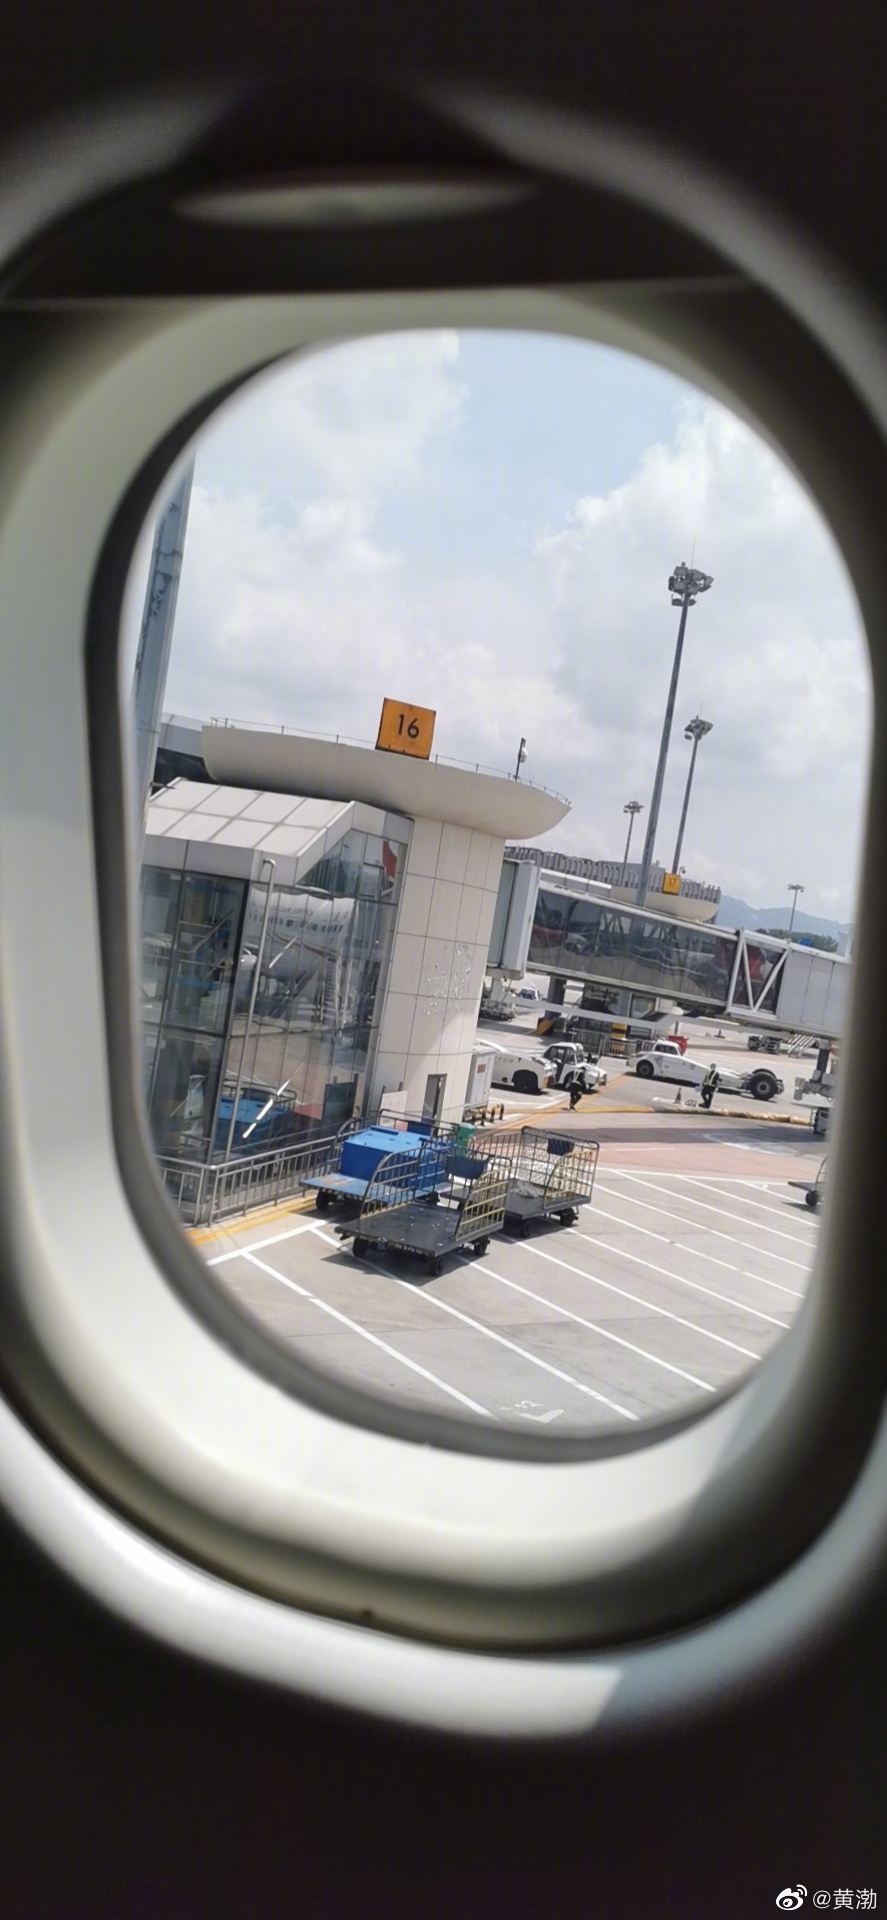 黄渤晒机场自拍照:大概是最后一次从青岛流亭机场出发了